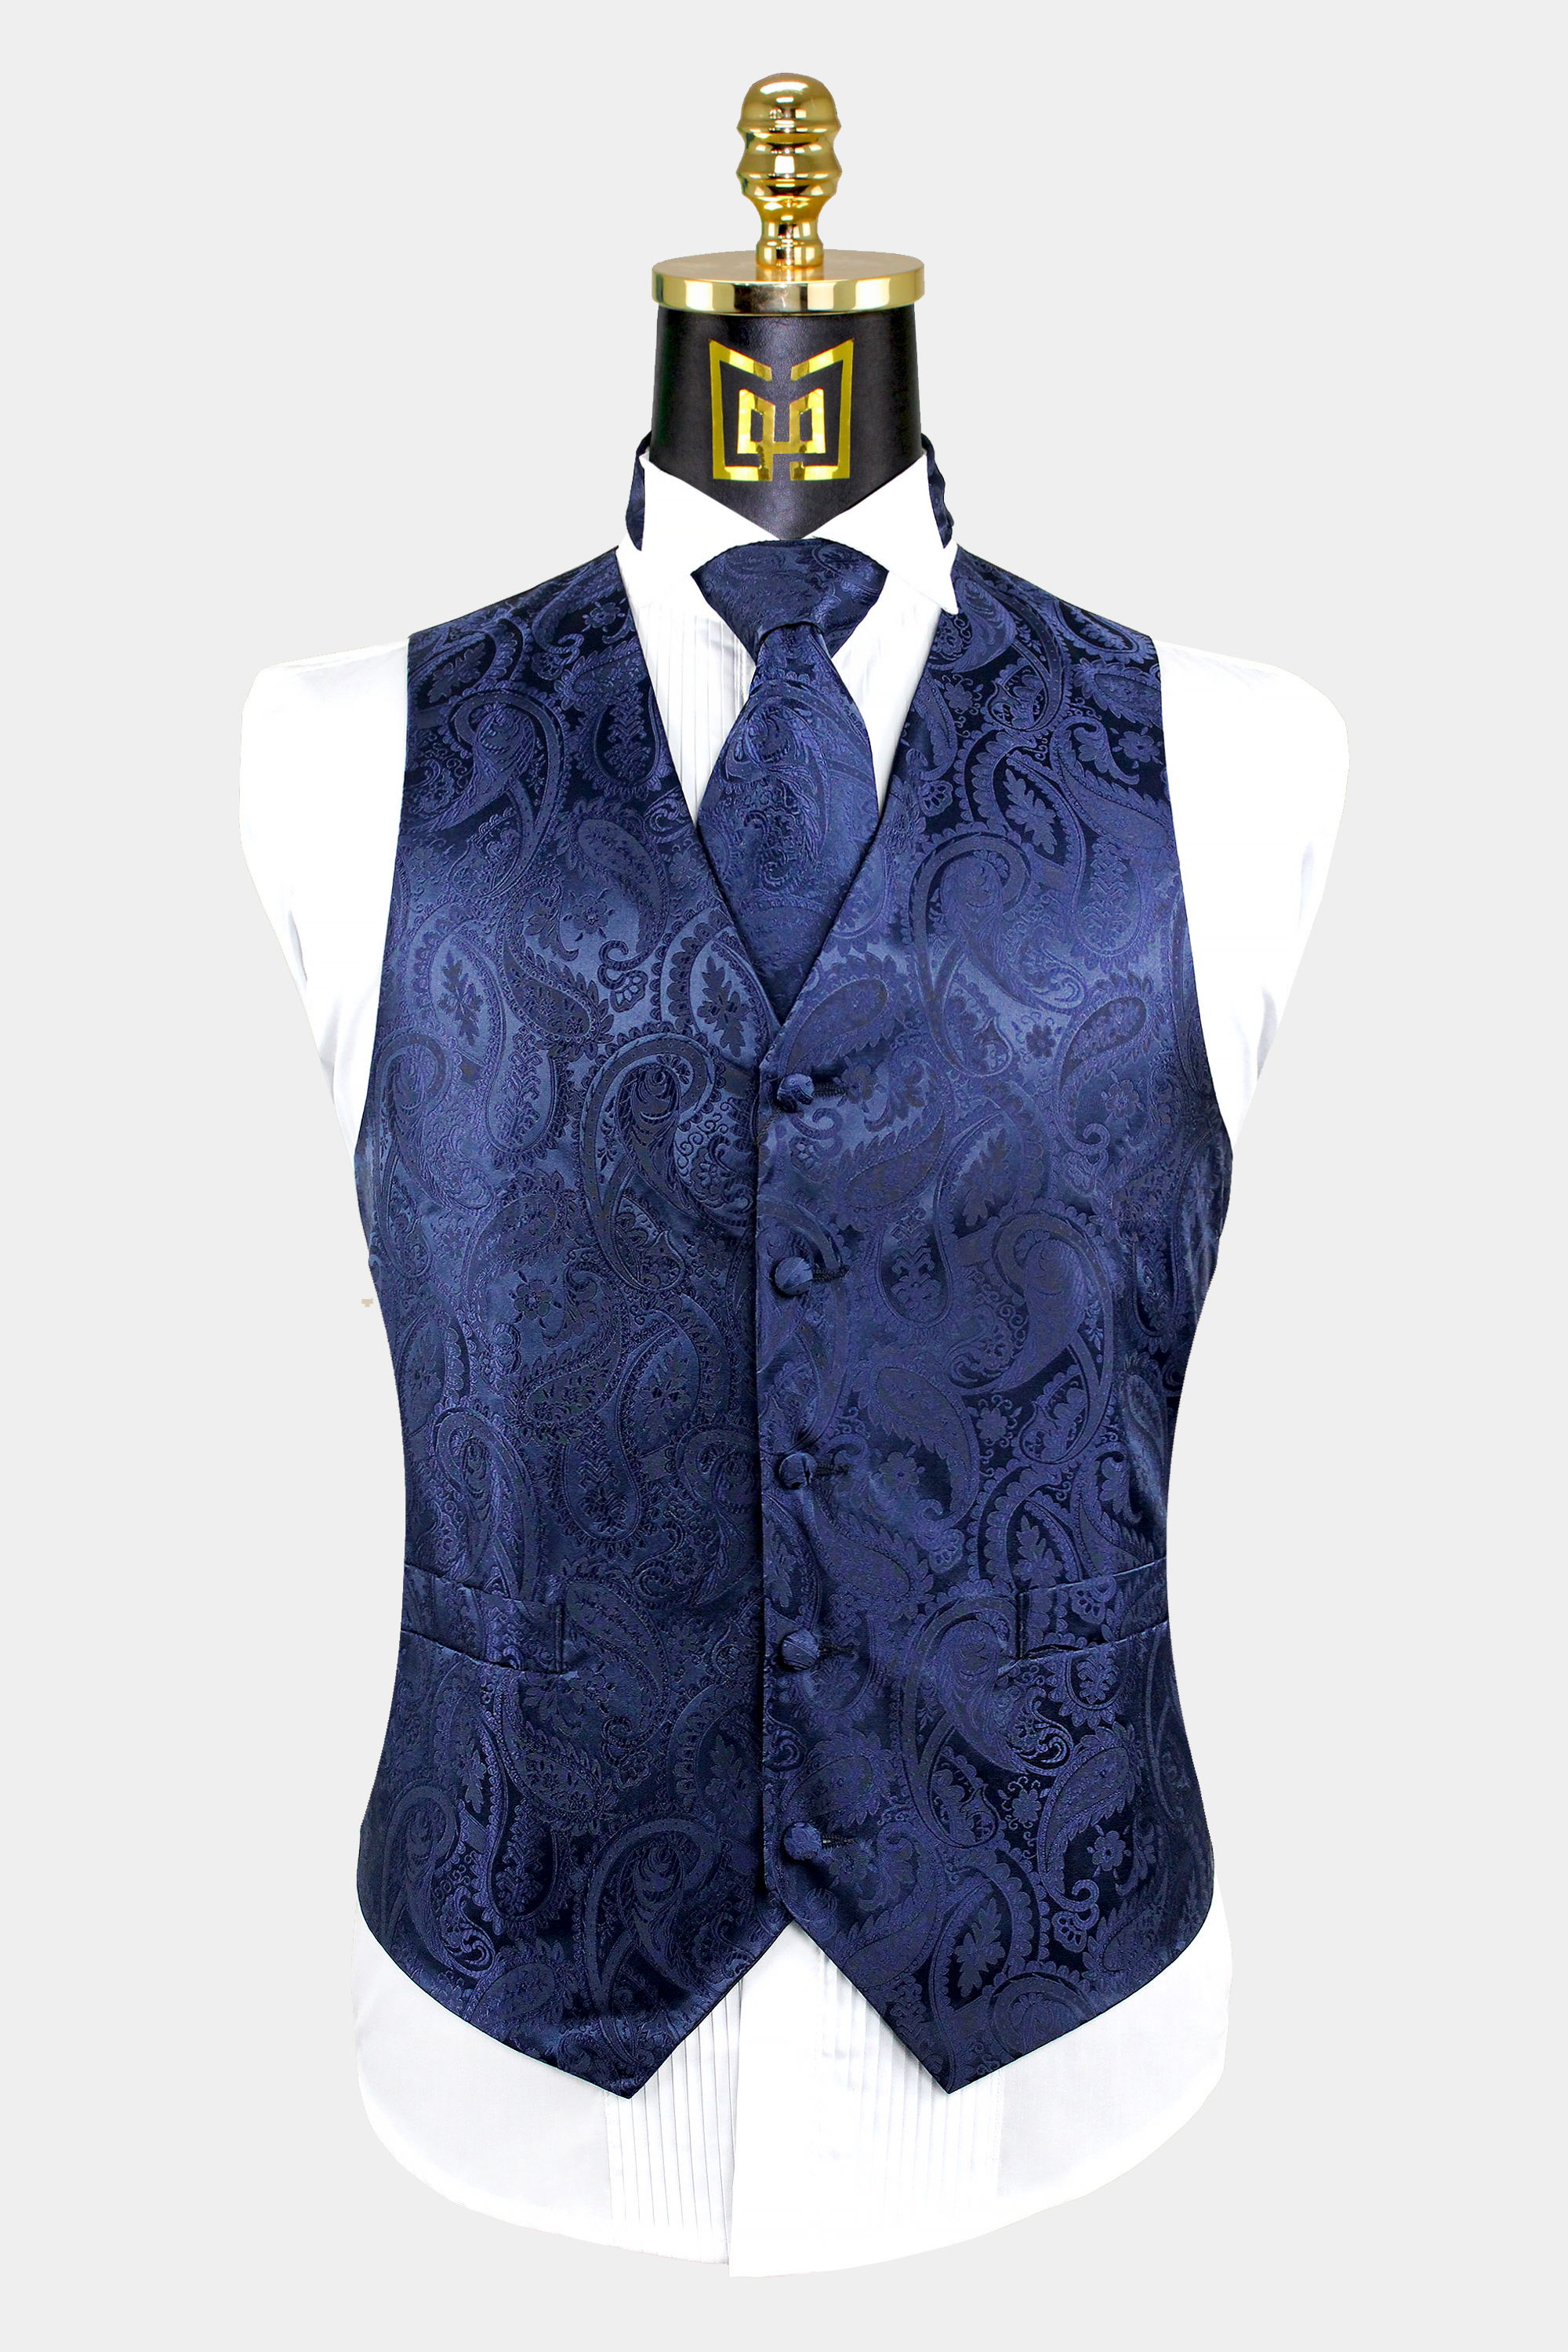 Mens-Navy-Blue-Paisley-Vest-and-Tie-Set-Groom-Wedding-Tuxedo-Vest-from-Gentlemansguru.com_